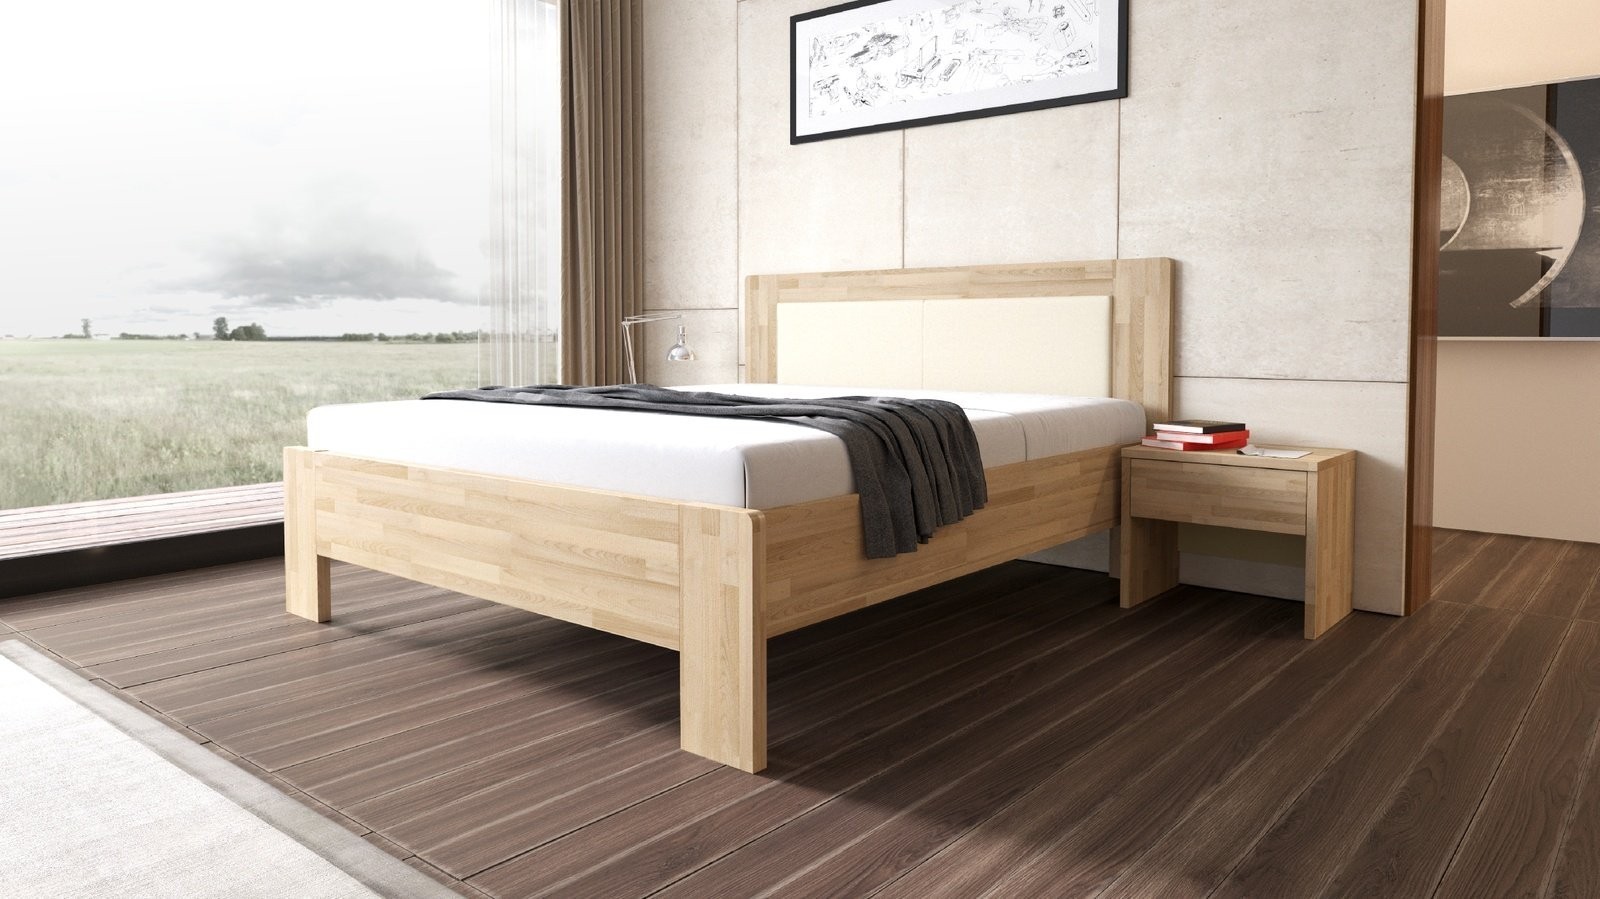 TEXPOL LÍVIA - masivní dubová postel s čalouněným čelem 140 x 200 cm, dub masiv + čalouněné čelo